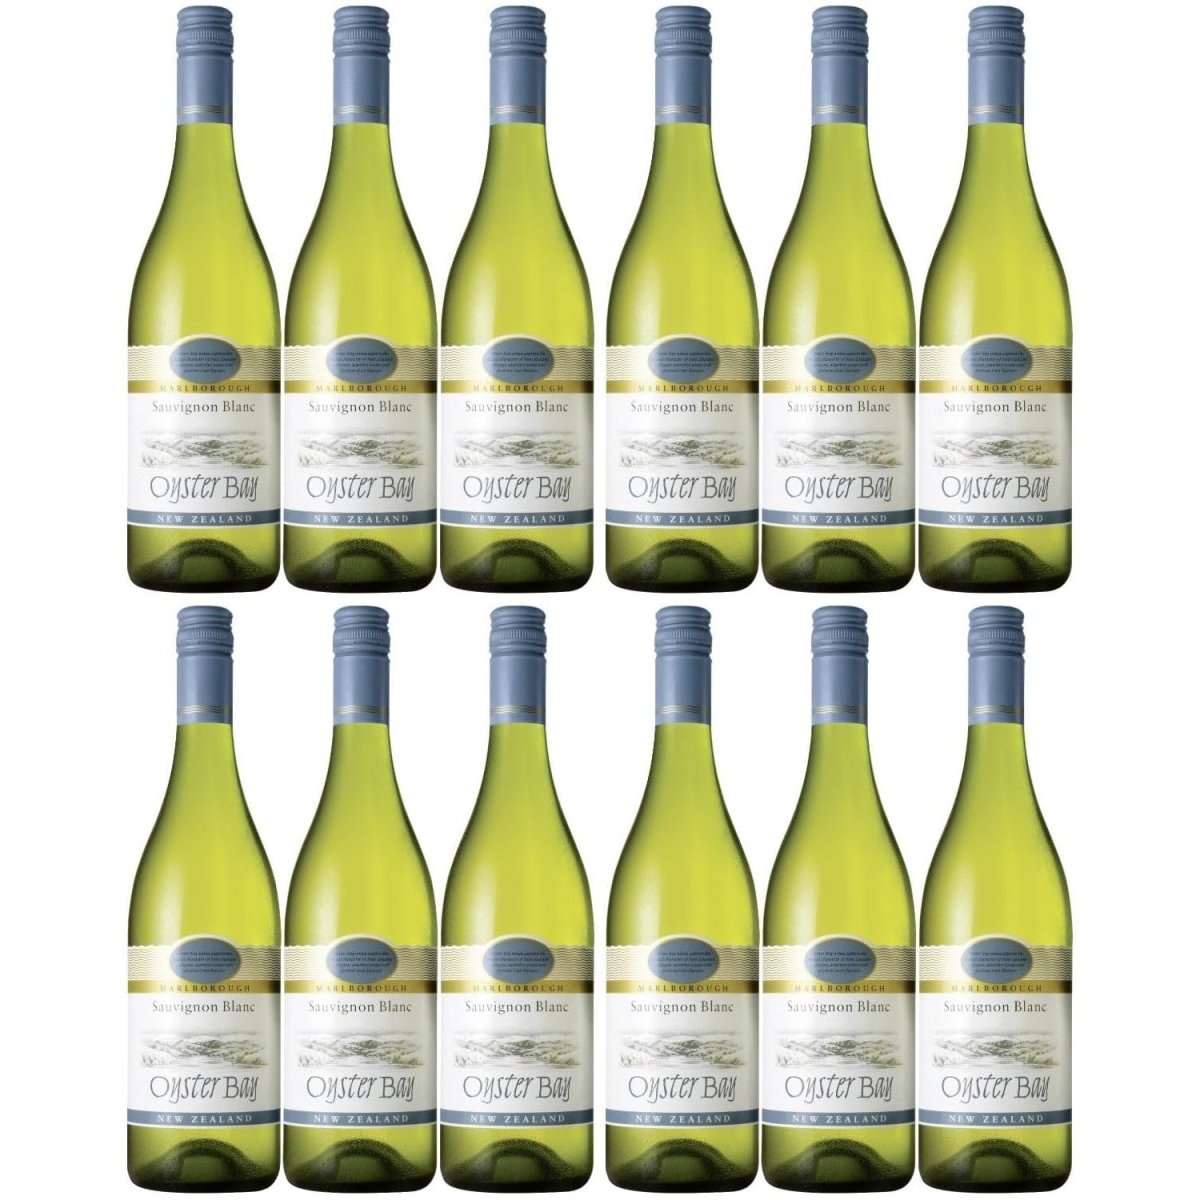 Oyster Bay Sauvignon Blanc Marlborough Weißwein Wein trocken Neuseeland (12 x 0.75l) - Versanel -